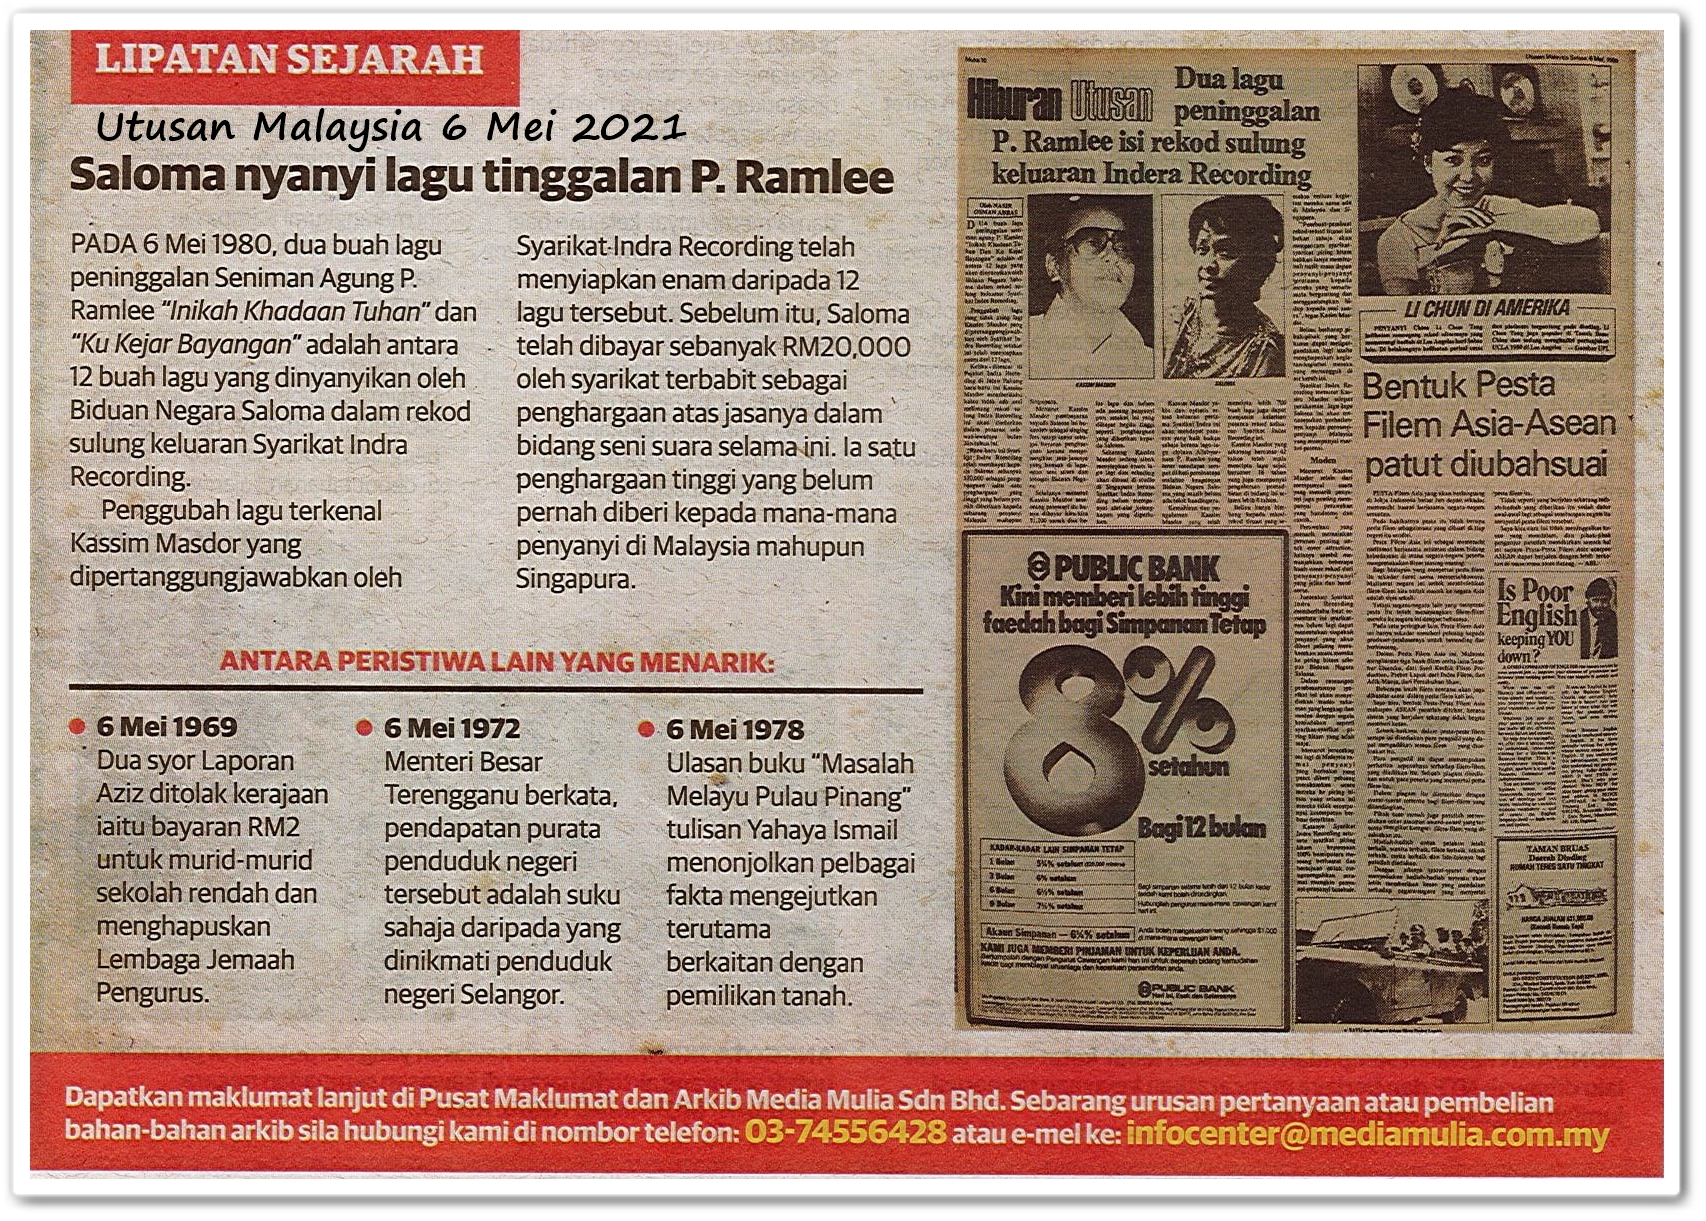 Lipatan sejarah 6 Mei - Keratan akhbar Utusan Malaysia 6 Mei 2021